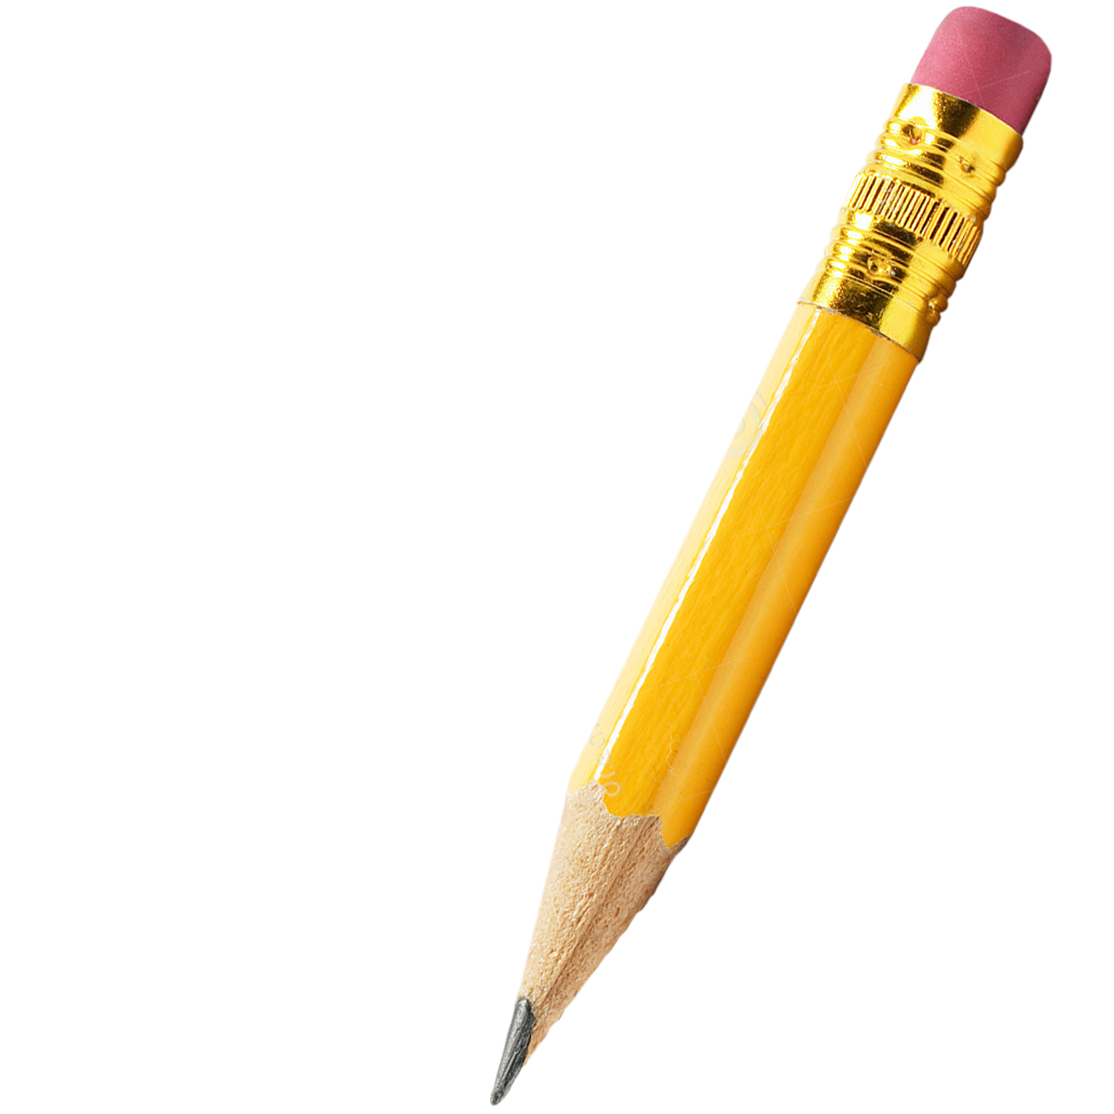 pen clipart led pencil